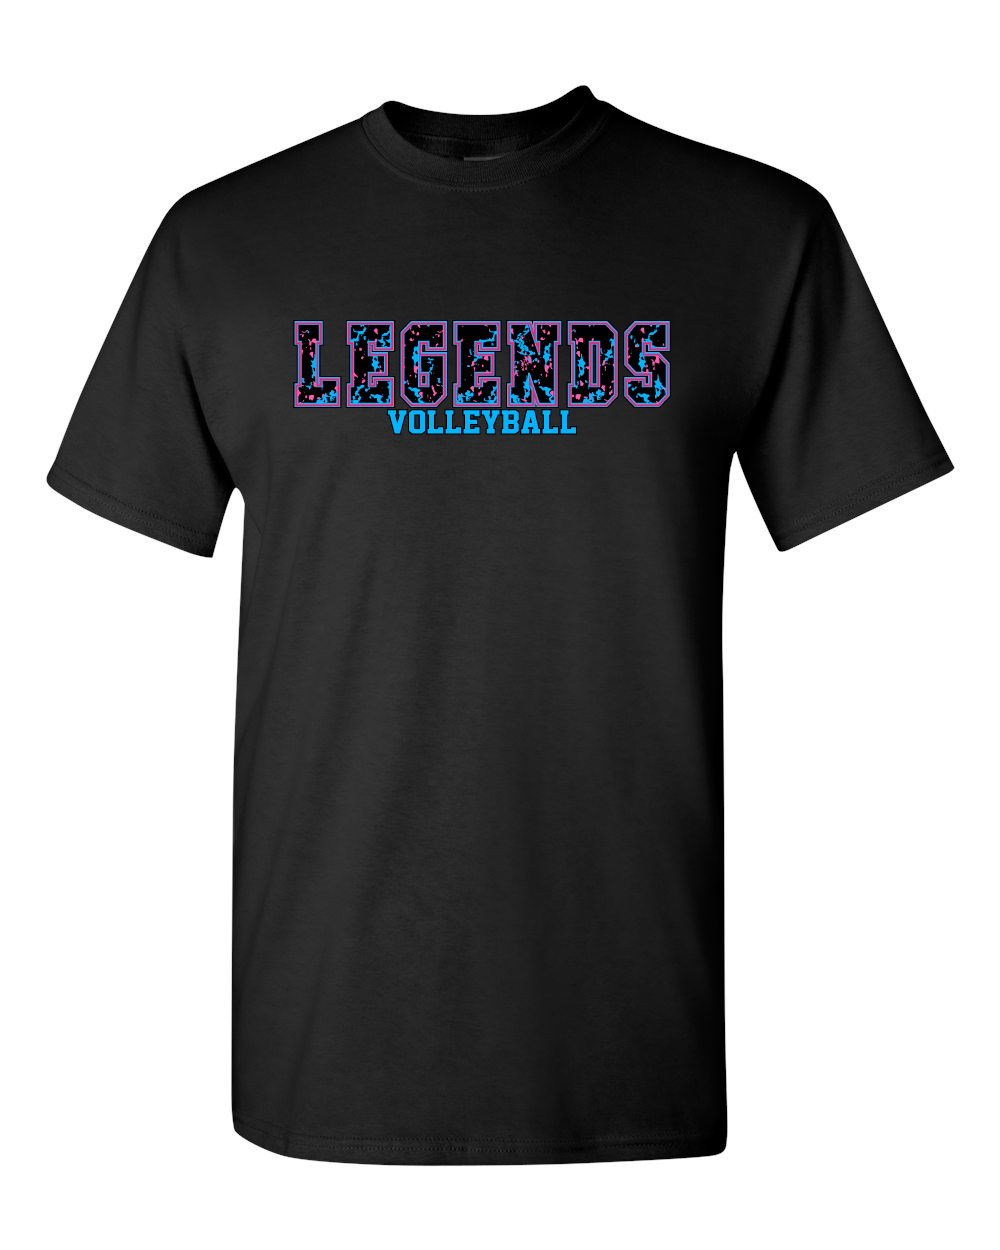 BSA-Legends Volleyball Cotton Tee-Black